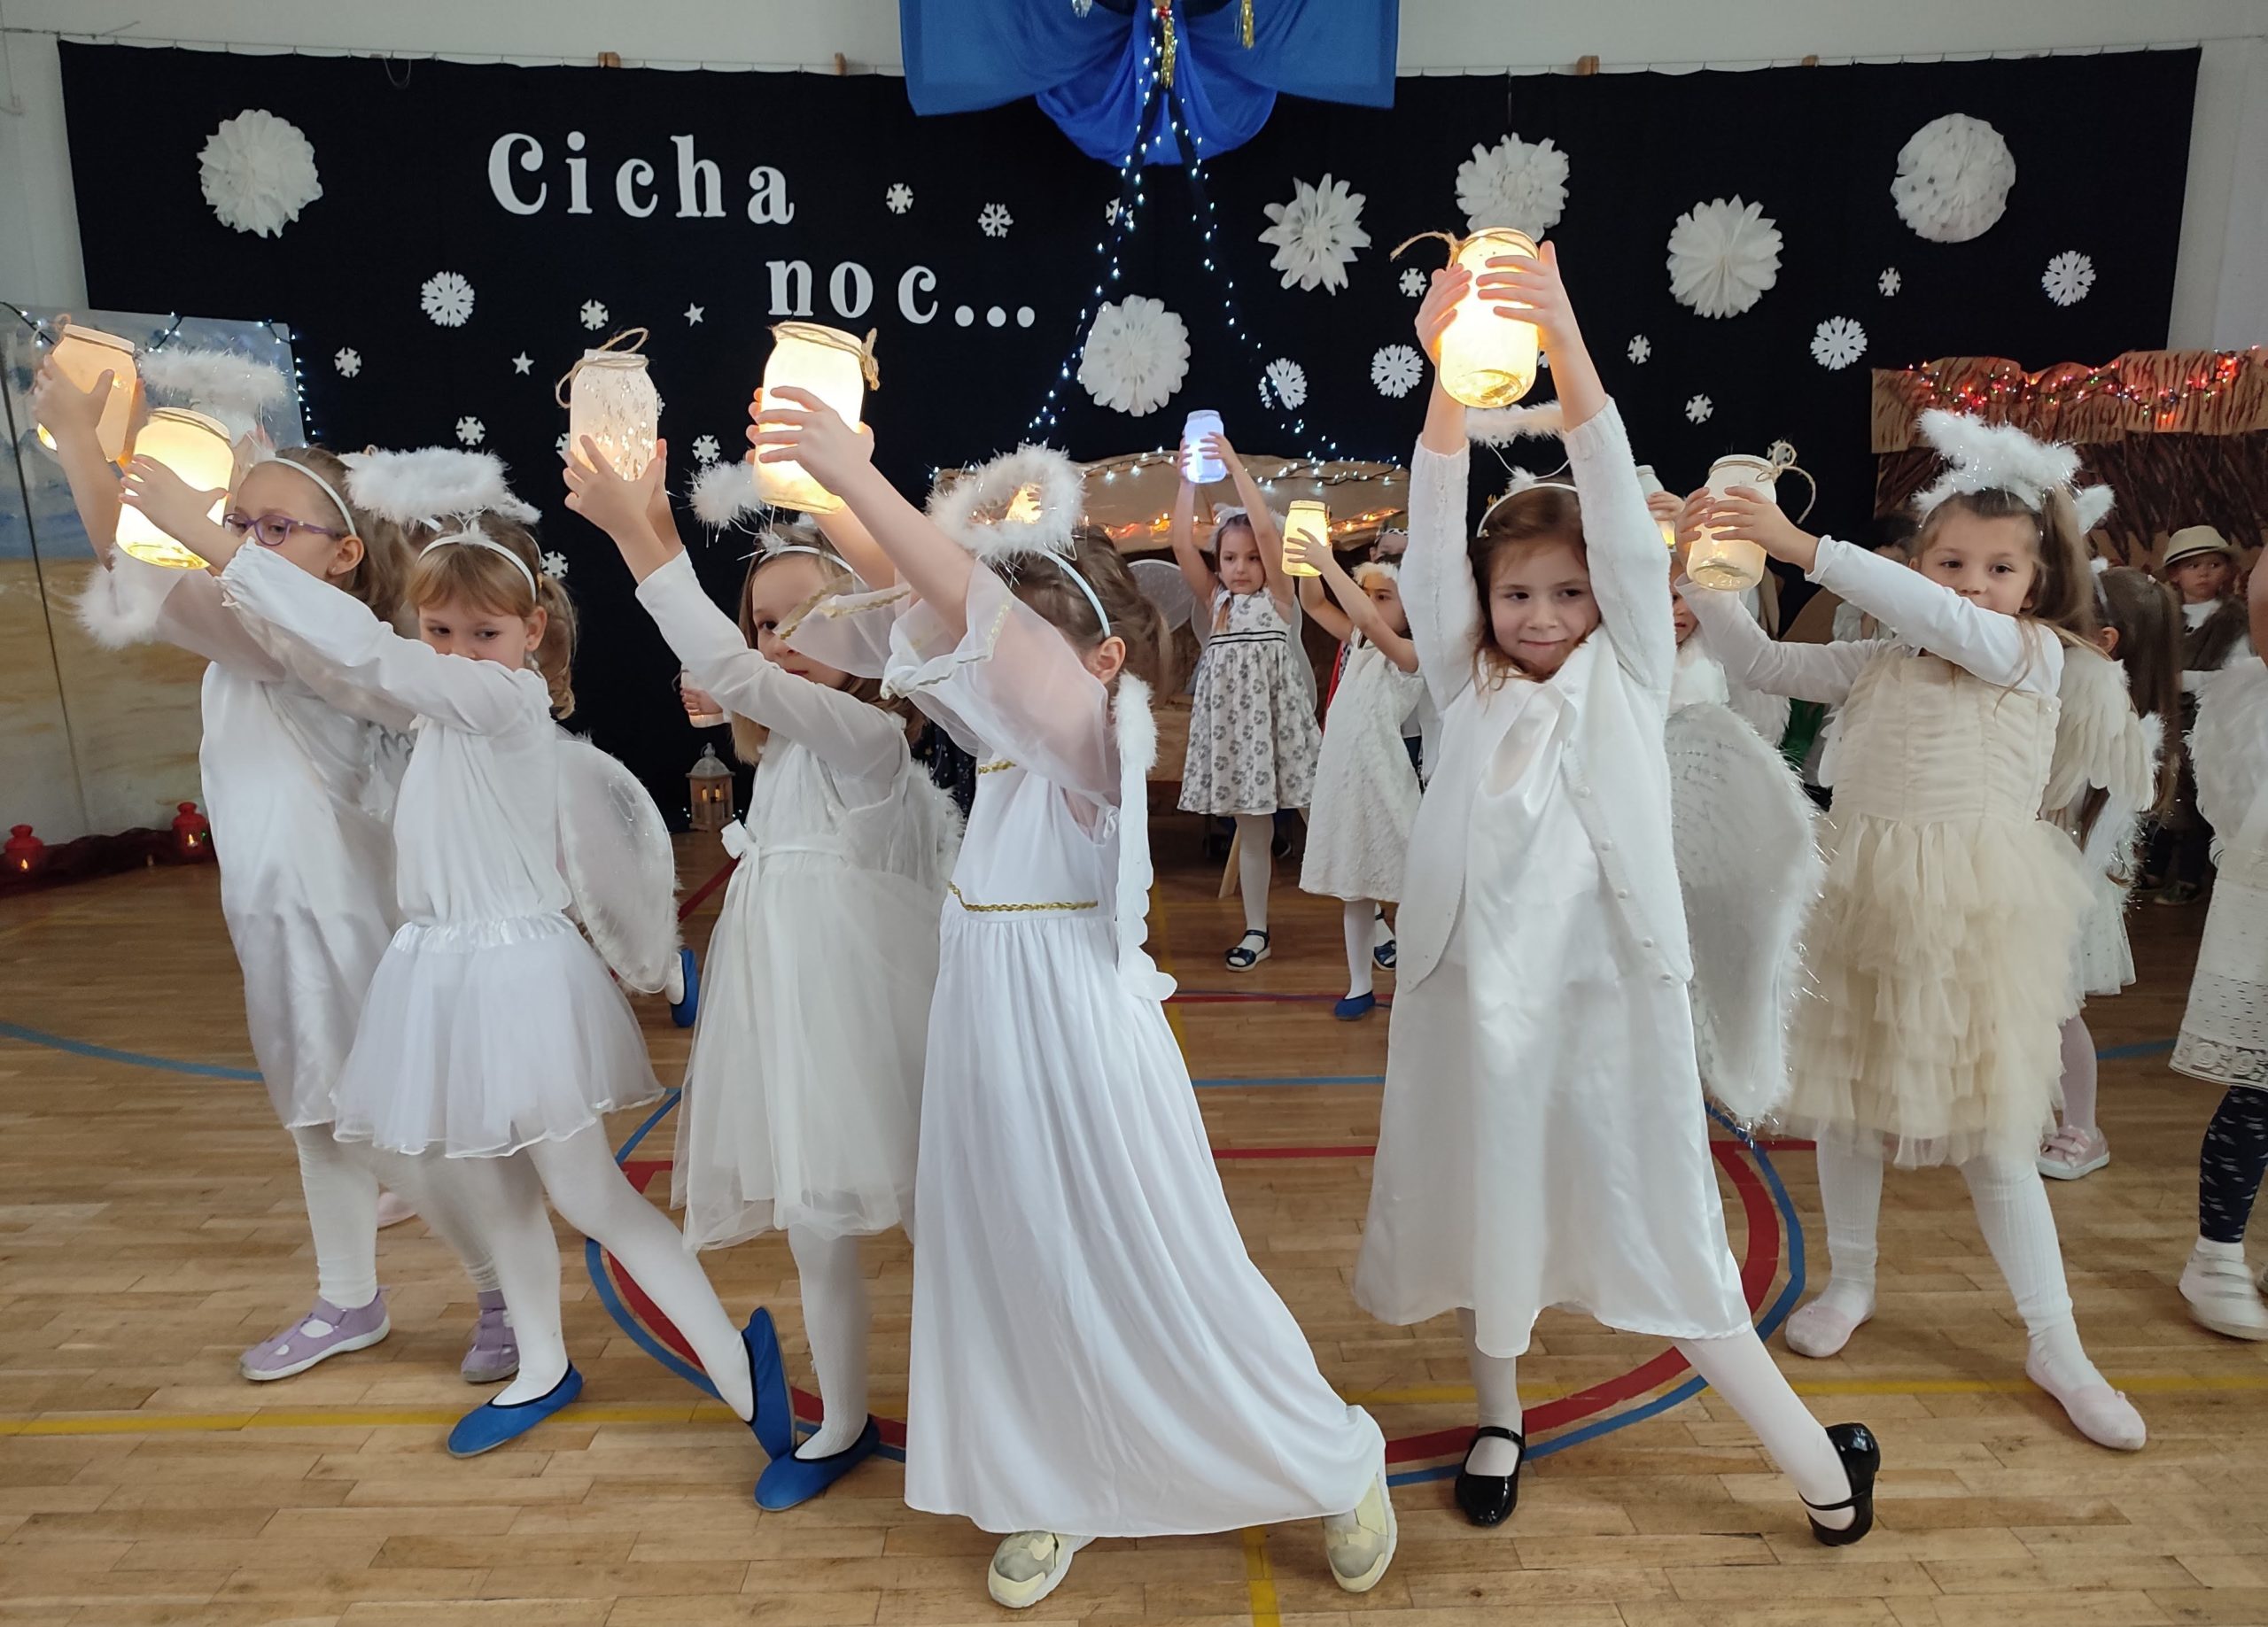 W sali gimnastycznej na tle dekoracji świątecznej z napisem „Cicha noc...”, na pierwszym planie tańczą ucze nnice ubrane w strój aniołka. Trzymają w rękach lampiony.